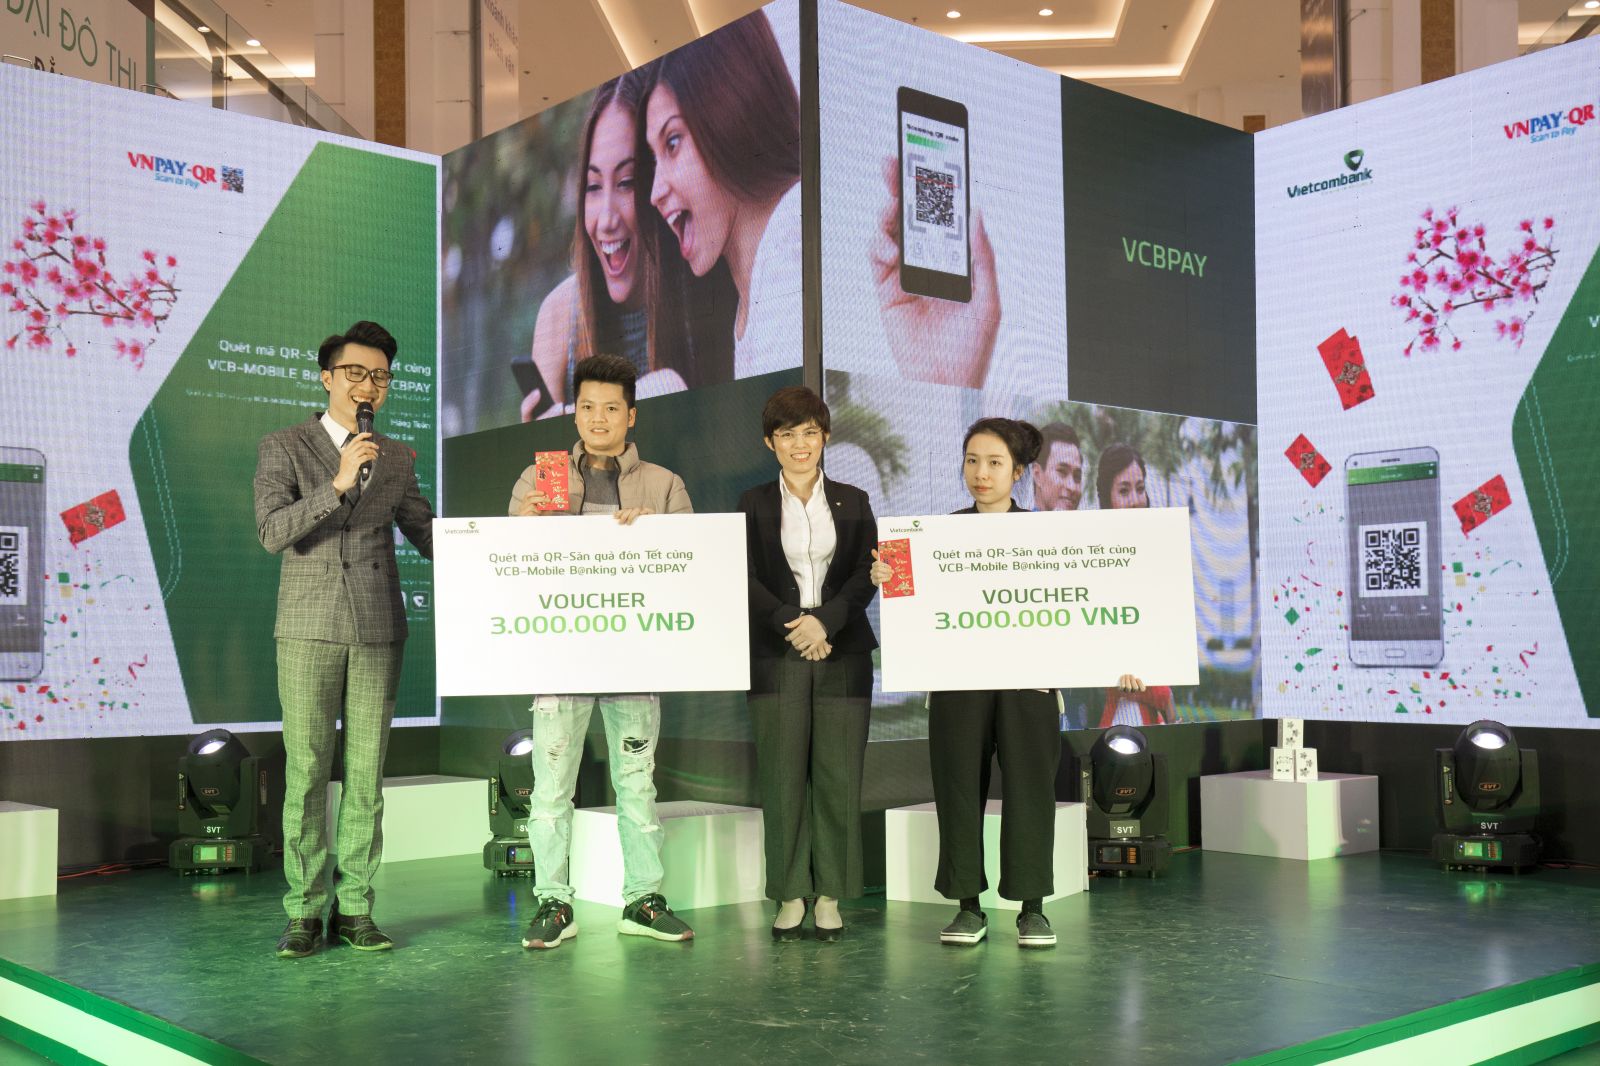 Bà Đậu Thị Kim Nhung – Phó trưởng phòng phụ trách phòng Marketing Bán lẻ trao quà cho các khách hàng may mắn khi đăng ký và trải nghiệm dịch vụ tại sự kiện